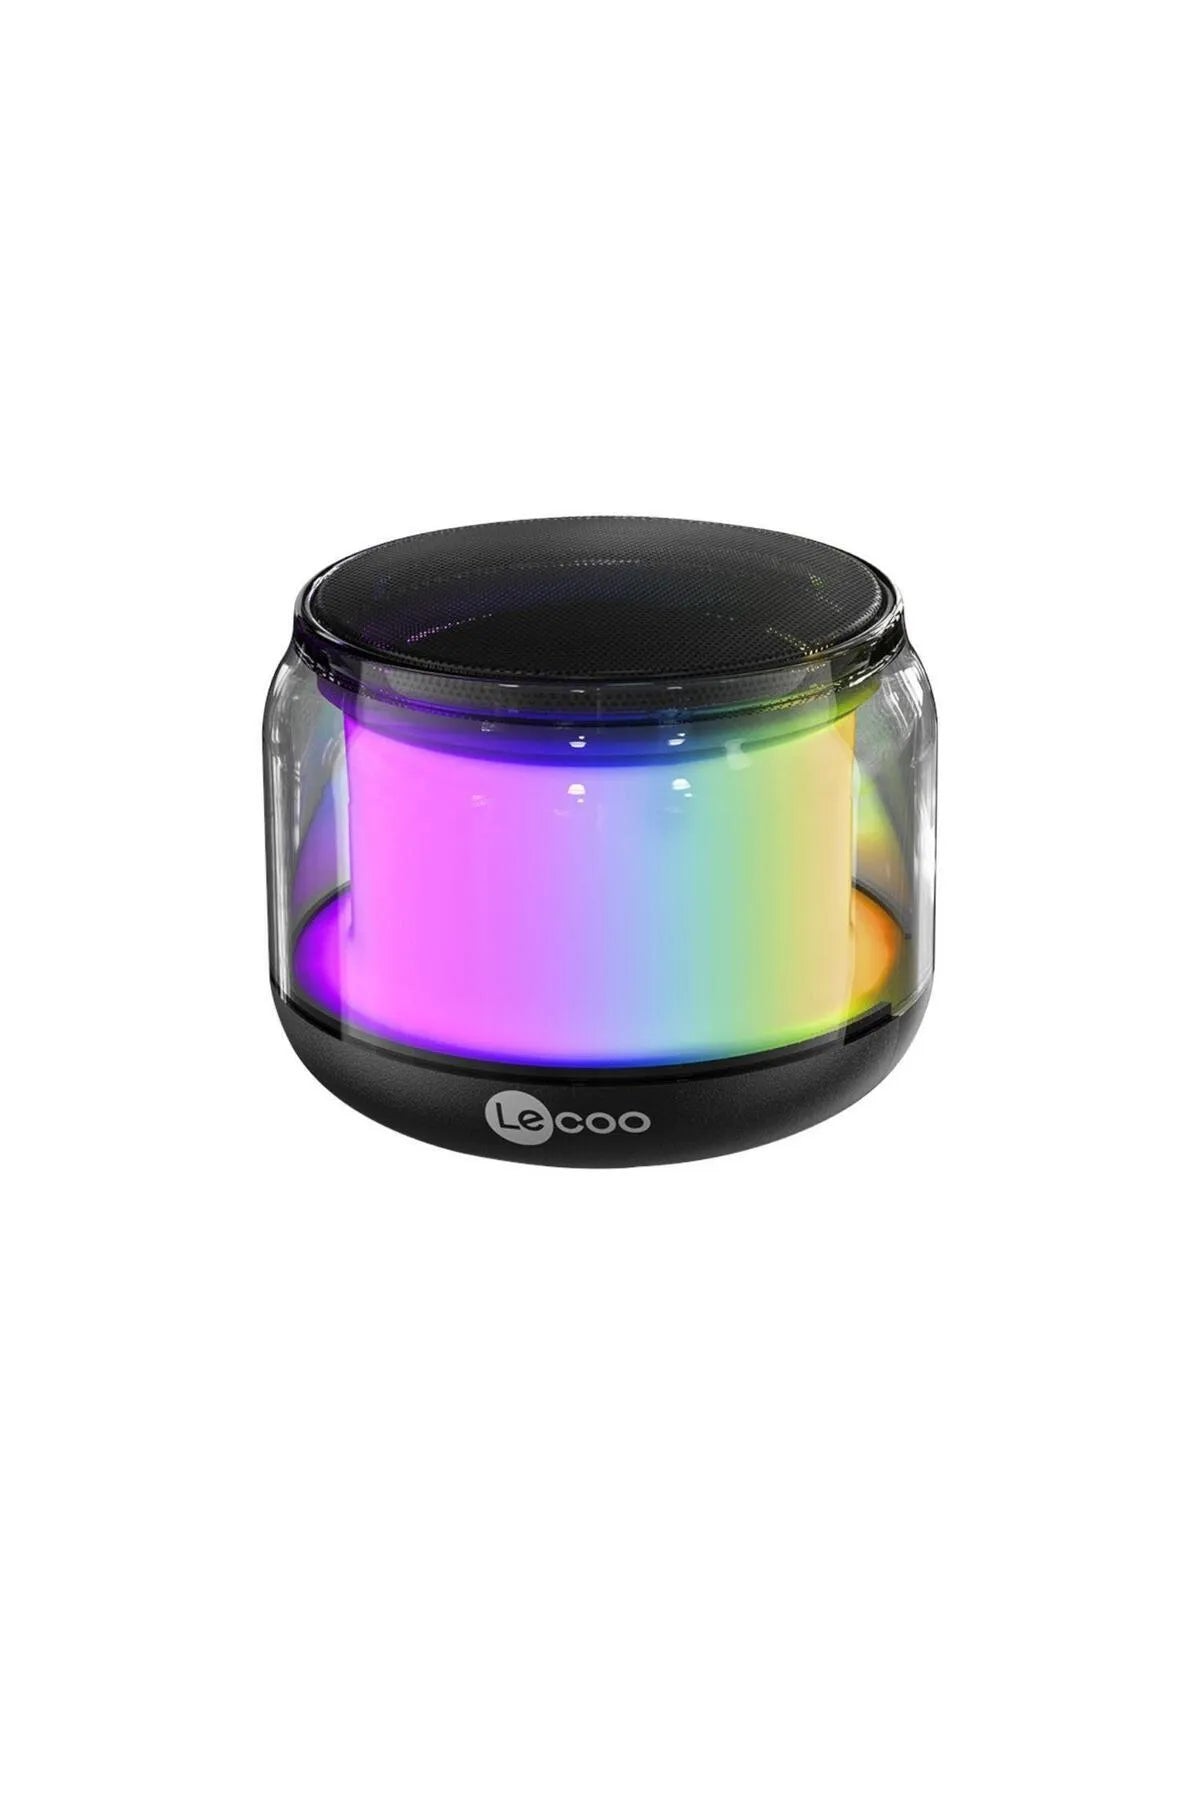 Lecoo DS106 RGB Taşınabilir Ses Bombası Bluetooth Mini Hoparlör